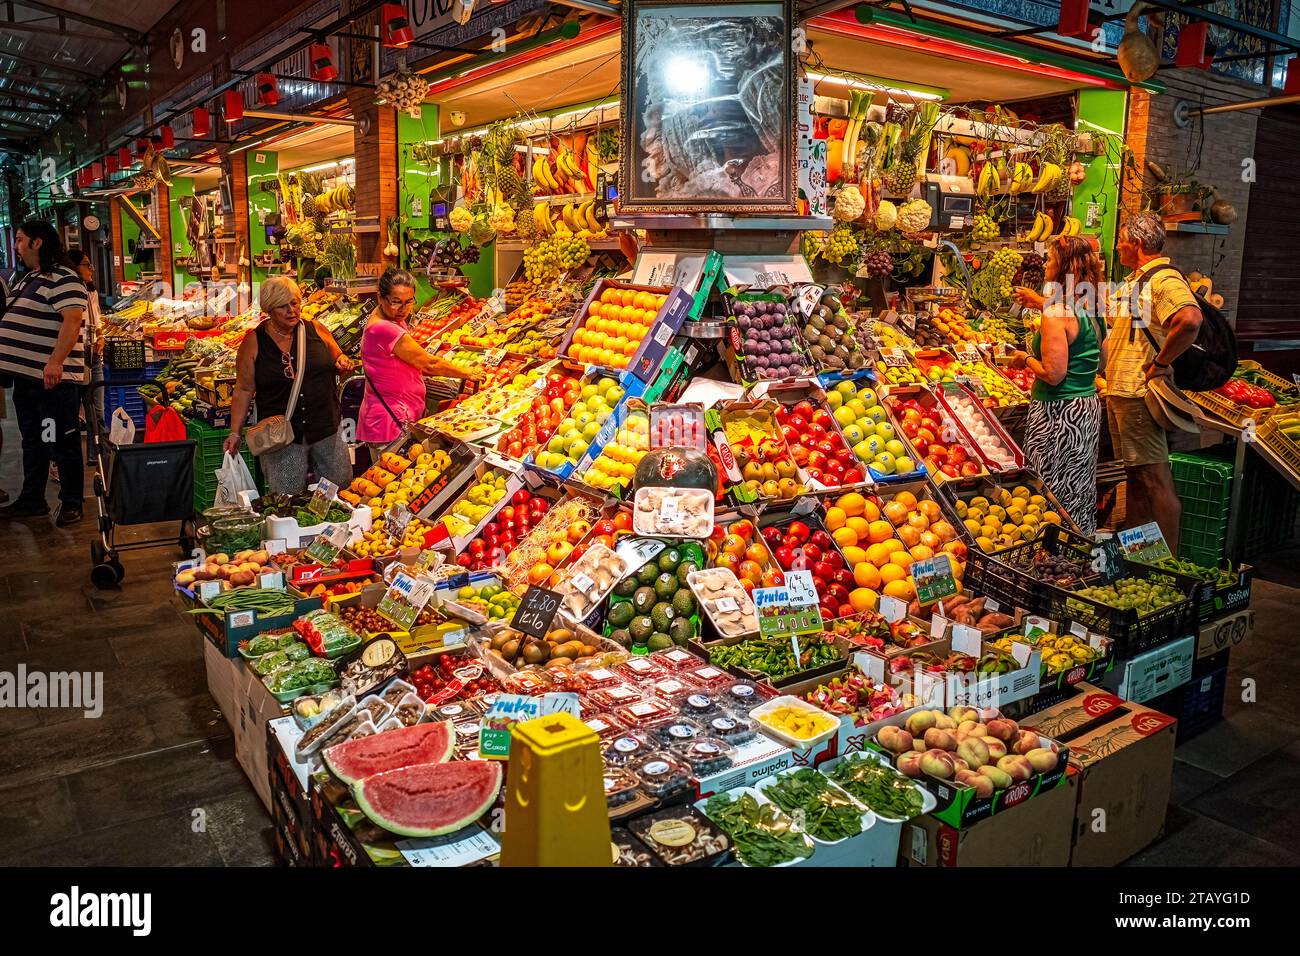 Exposition du marché des fruits et légumes au marché Triana à Séville Espagne Banque D'Images